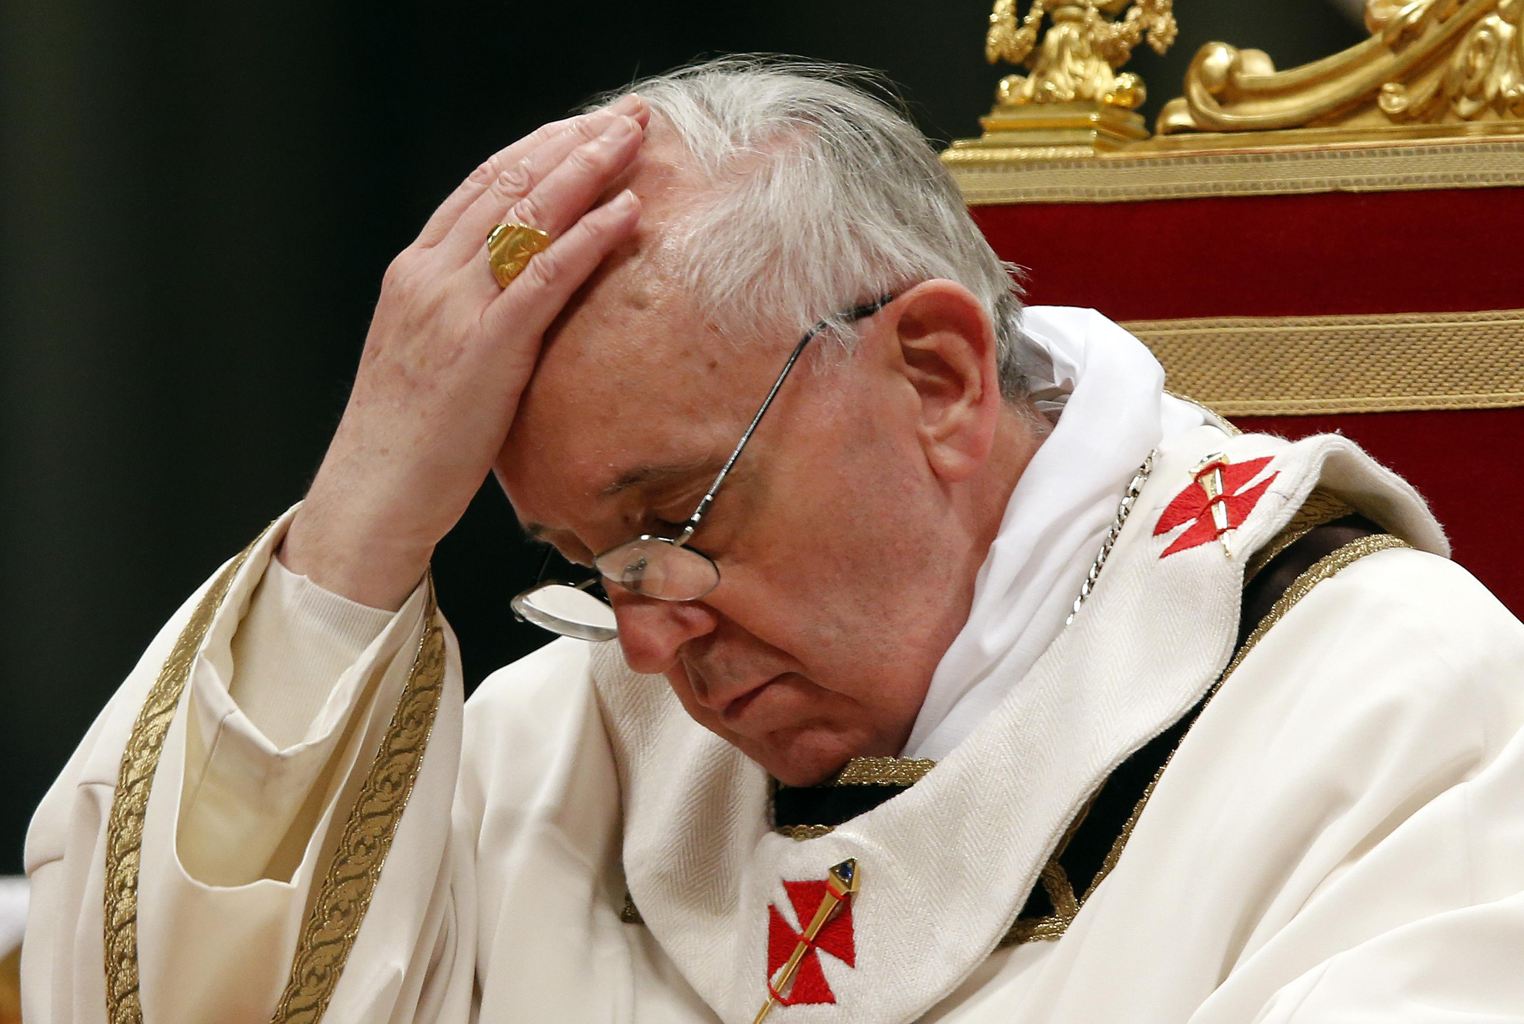 Conclave per il dopo Pell finanze Vaticane trasformate in Banca della Carità